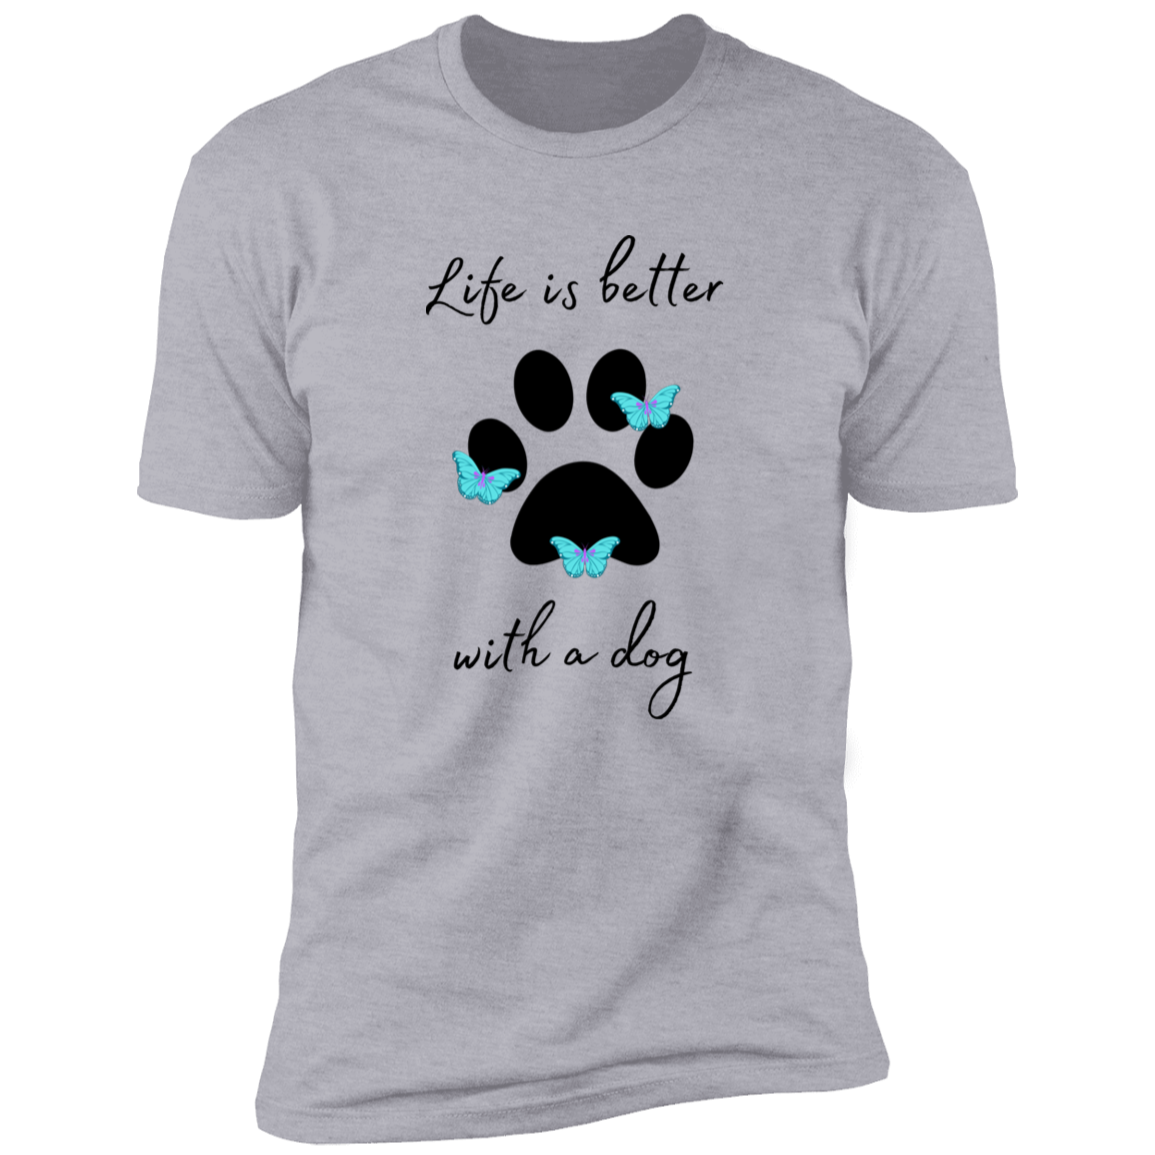 Kitt-Tea T-Shirt, kitty tea shirt, Cat Shirt for humans, funny cat shirt, in light heather gray